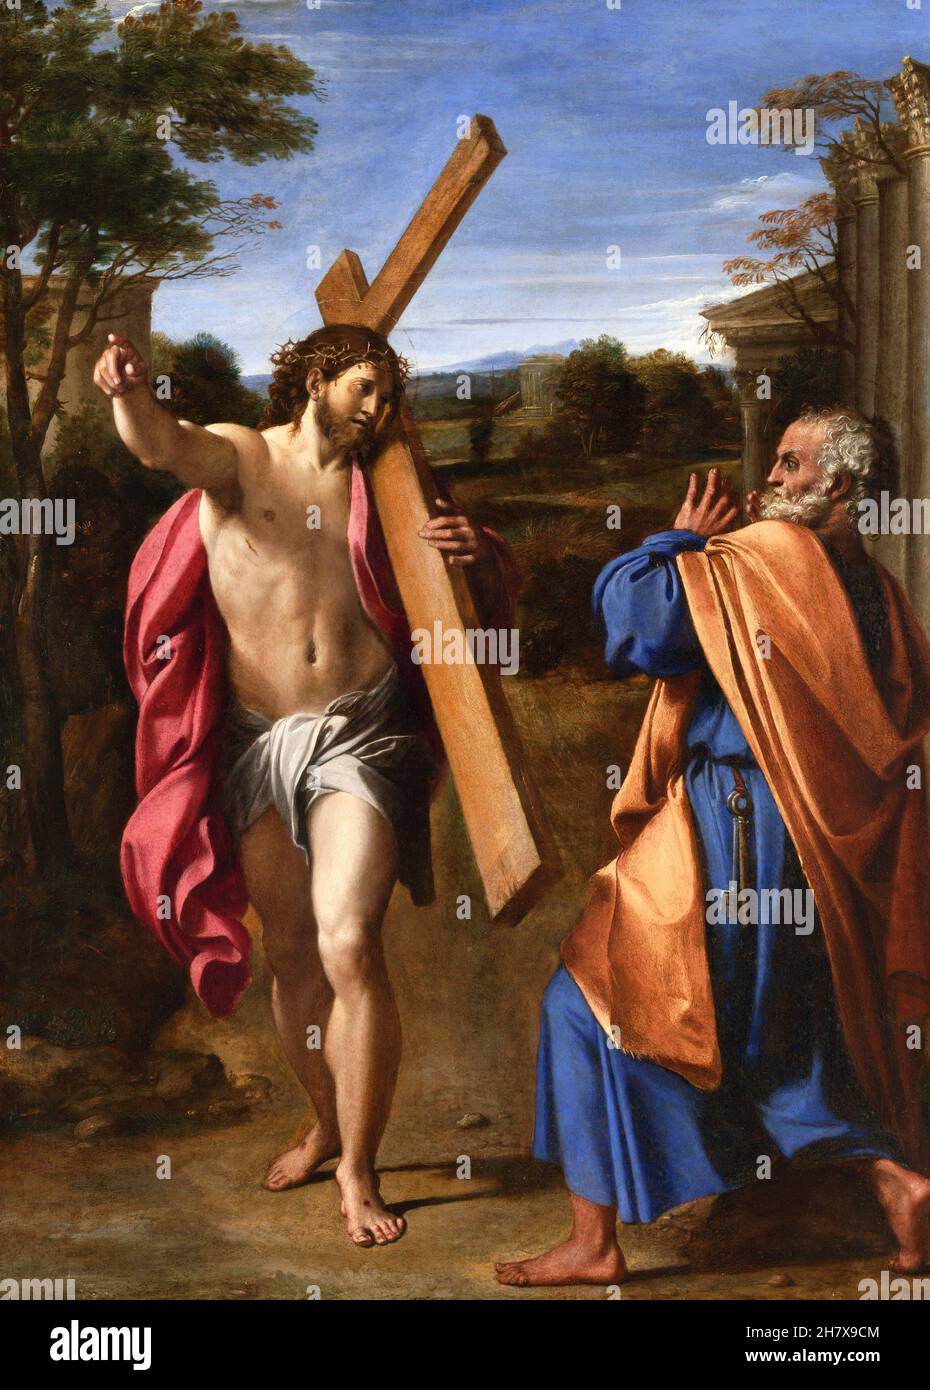 Christ apparaissant à Saint Pierre sur la voie Appienne (Domine, quo Vadis?)Par le peintre baroque italien Annibale Carracci (1560-1609), huile sur bois, c.1601/2 Banque D'Images